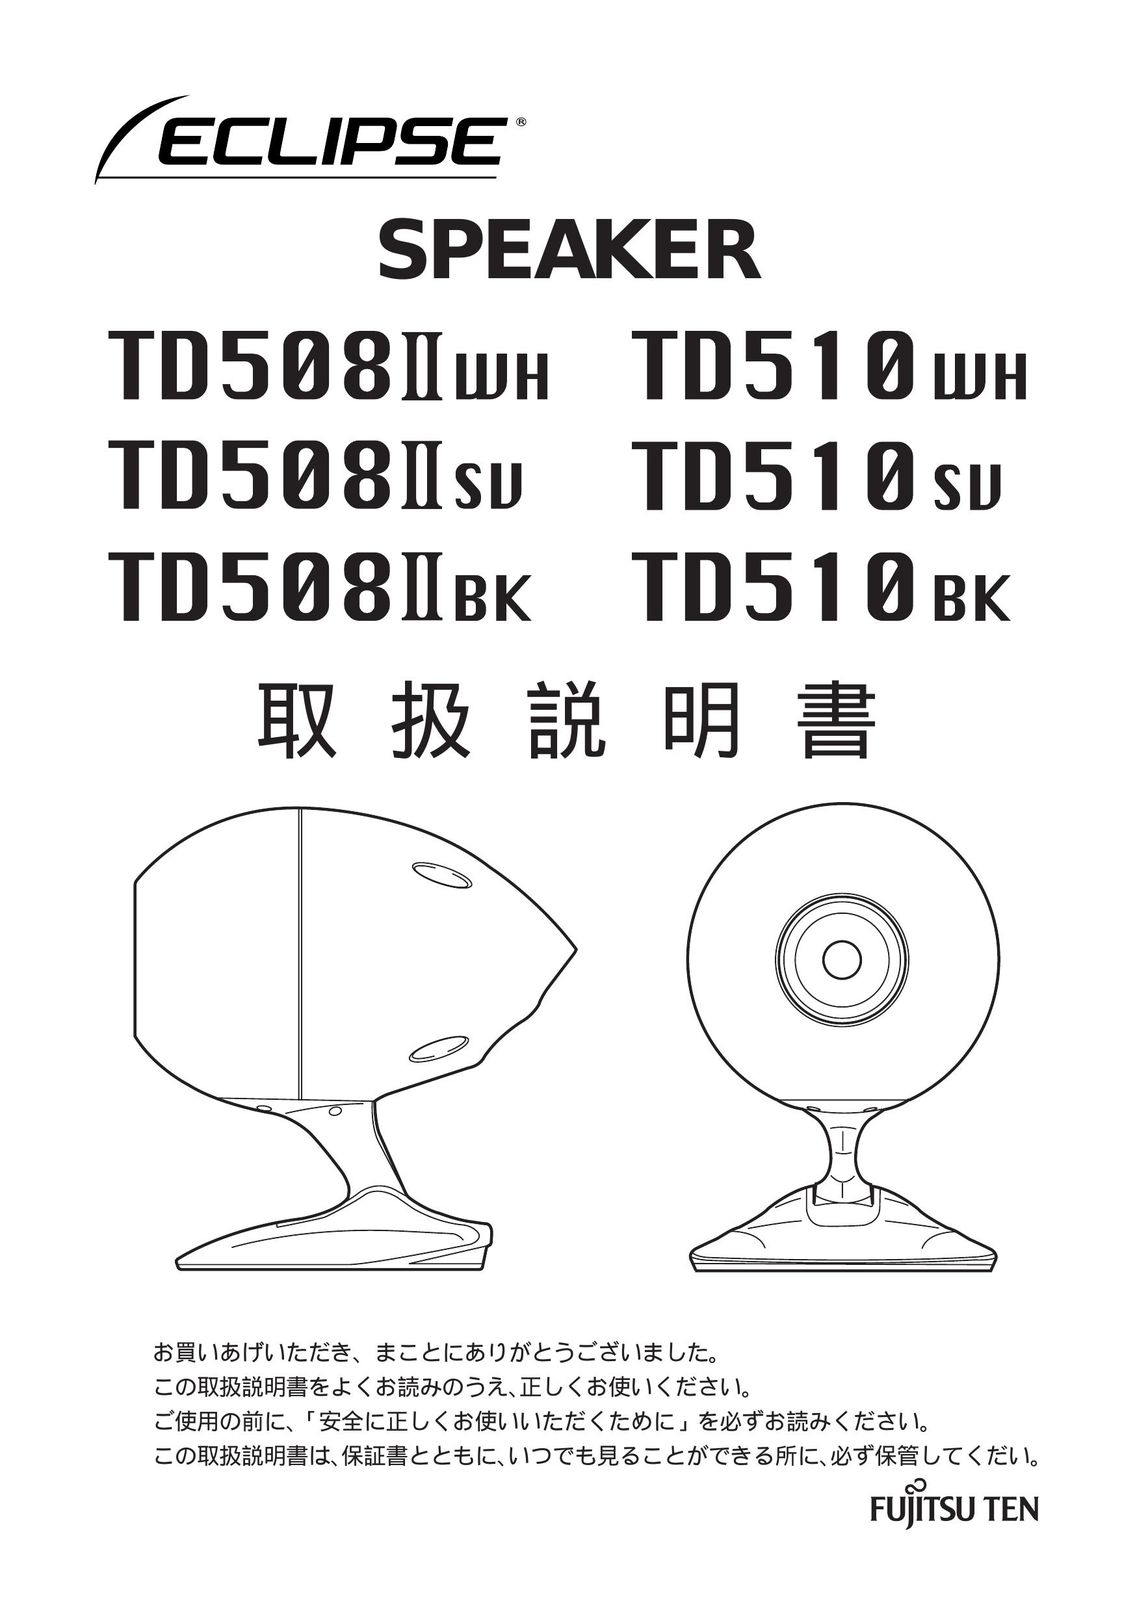 Eclipse - Fujitsu Ten TD508II WH Car Speaker User Manual